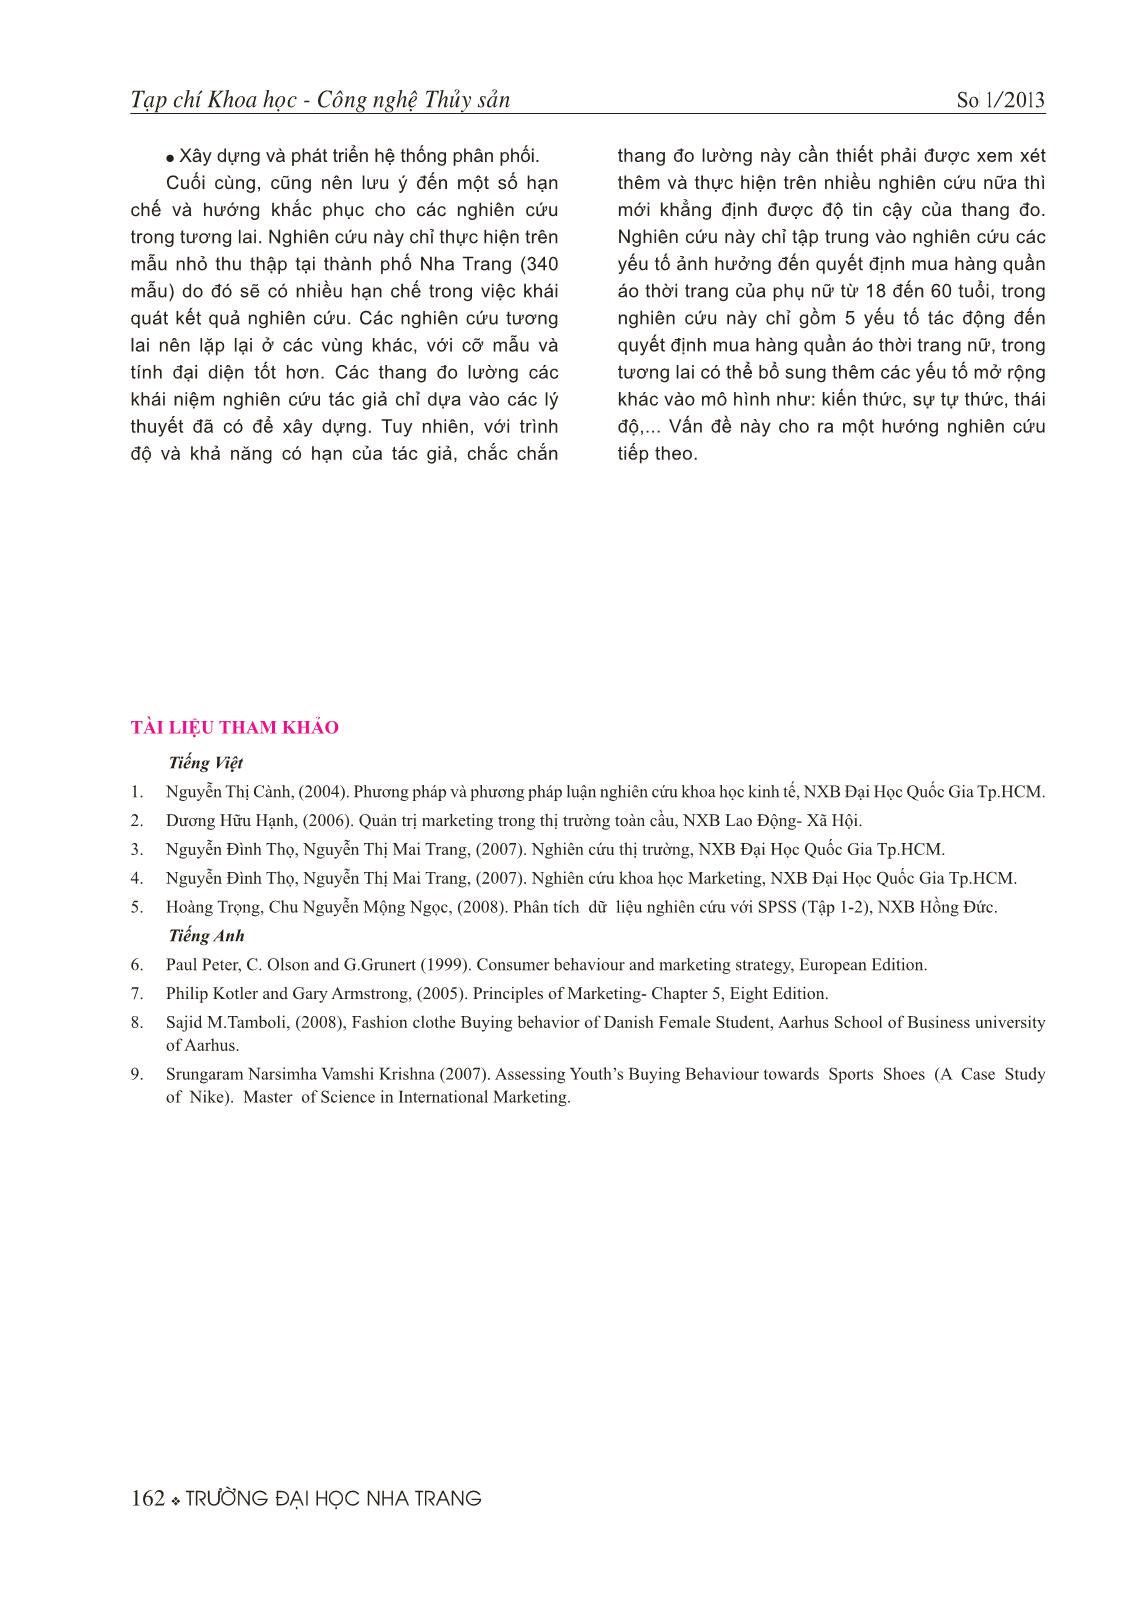 Một số yếu tố ảnh hưởng đến quyết định mua hàng quần áo thời trang nữ, thành phố Nha Trang trang 7